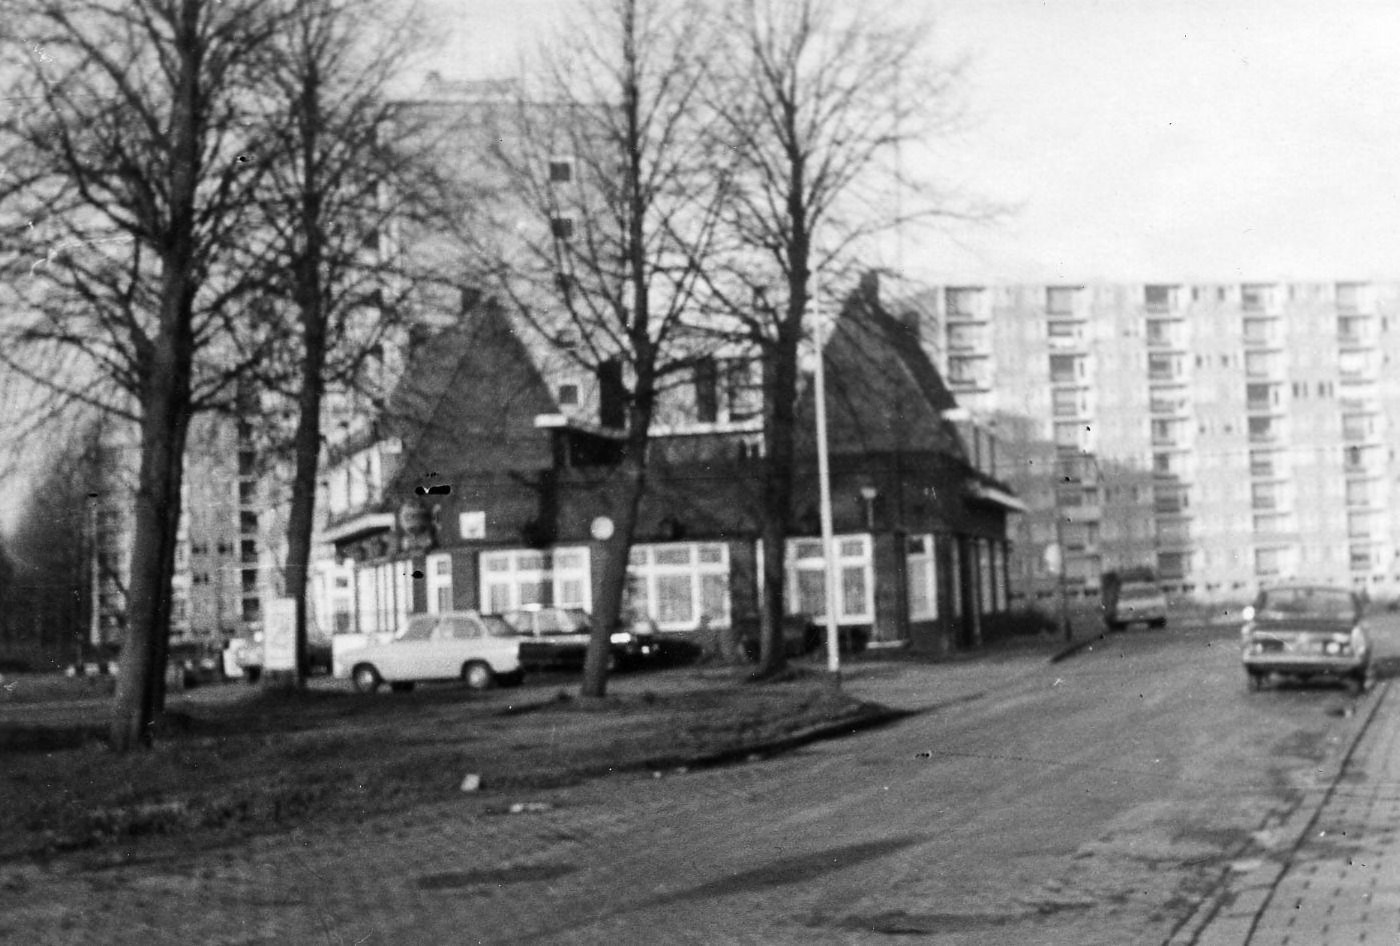 "Het witte Paard", met op de achtergrond de flats van Hoogheem (BHIC, fotonummer 1901-008821)